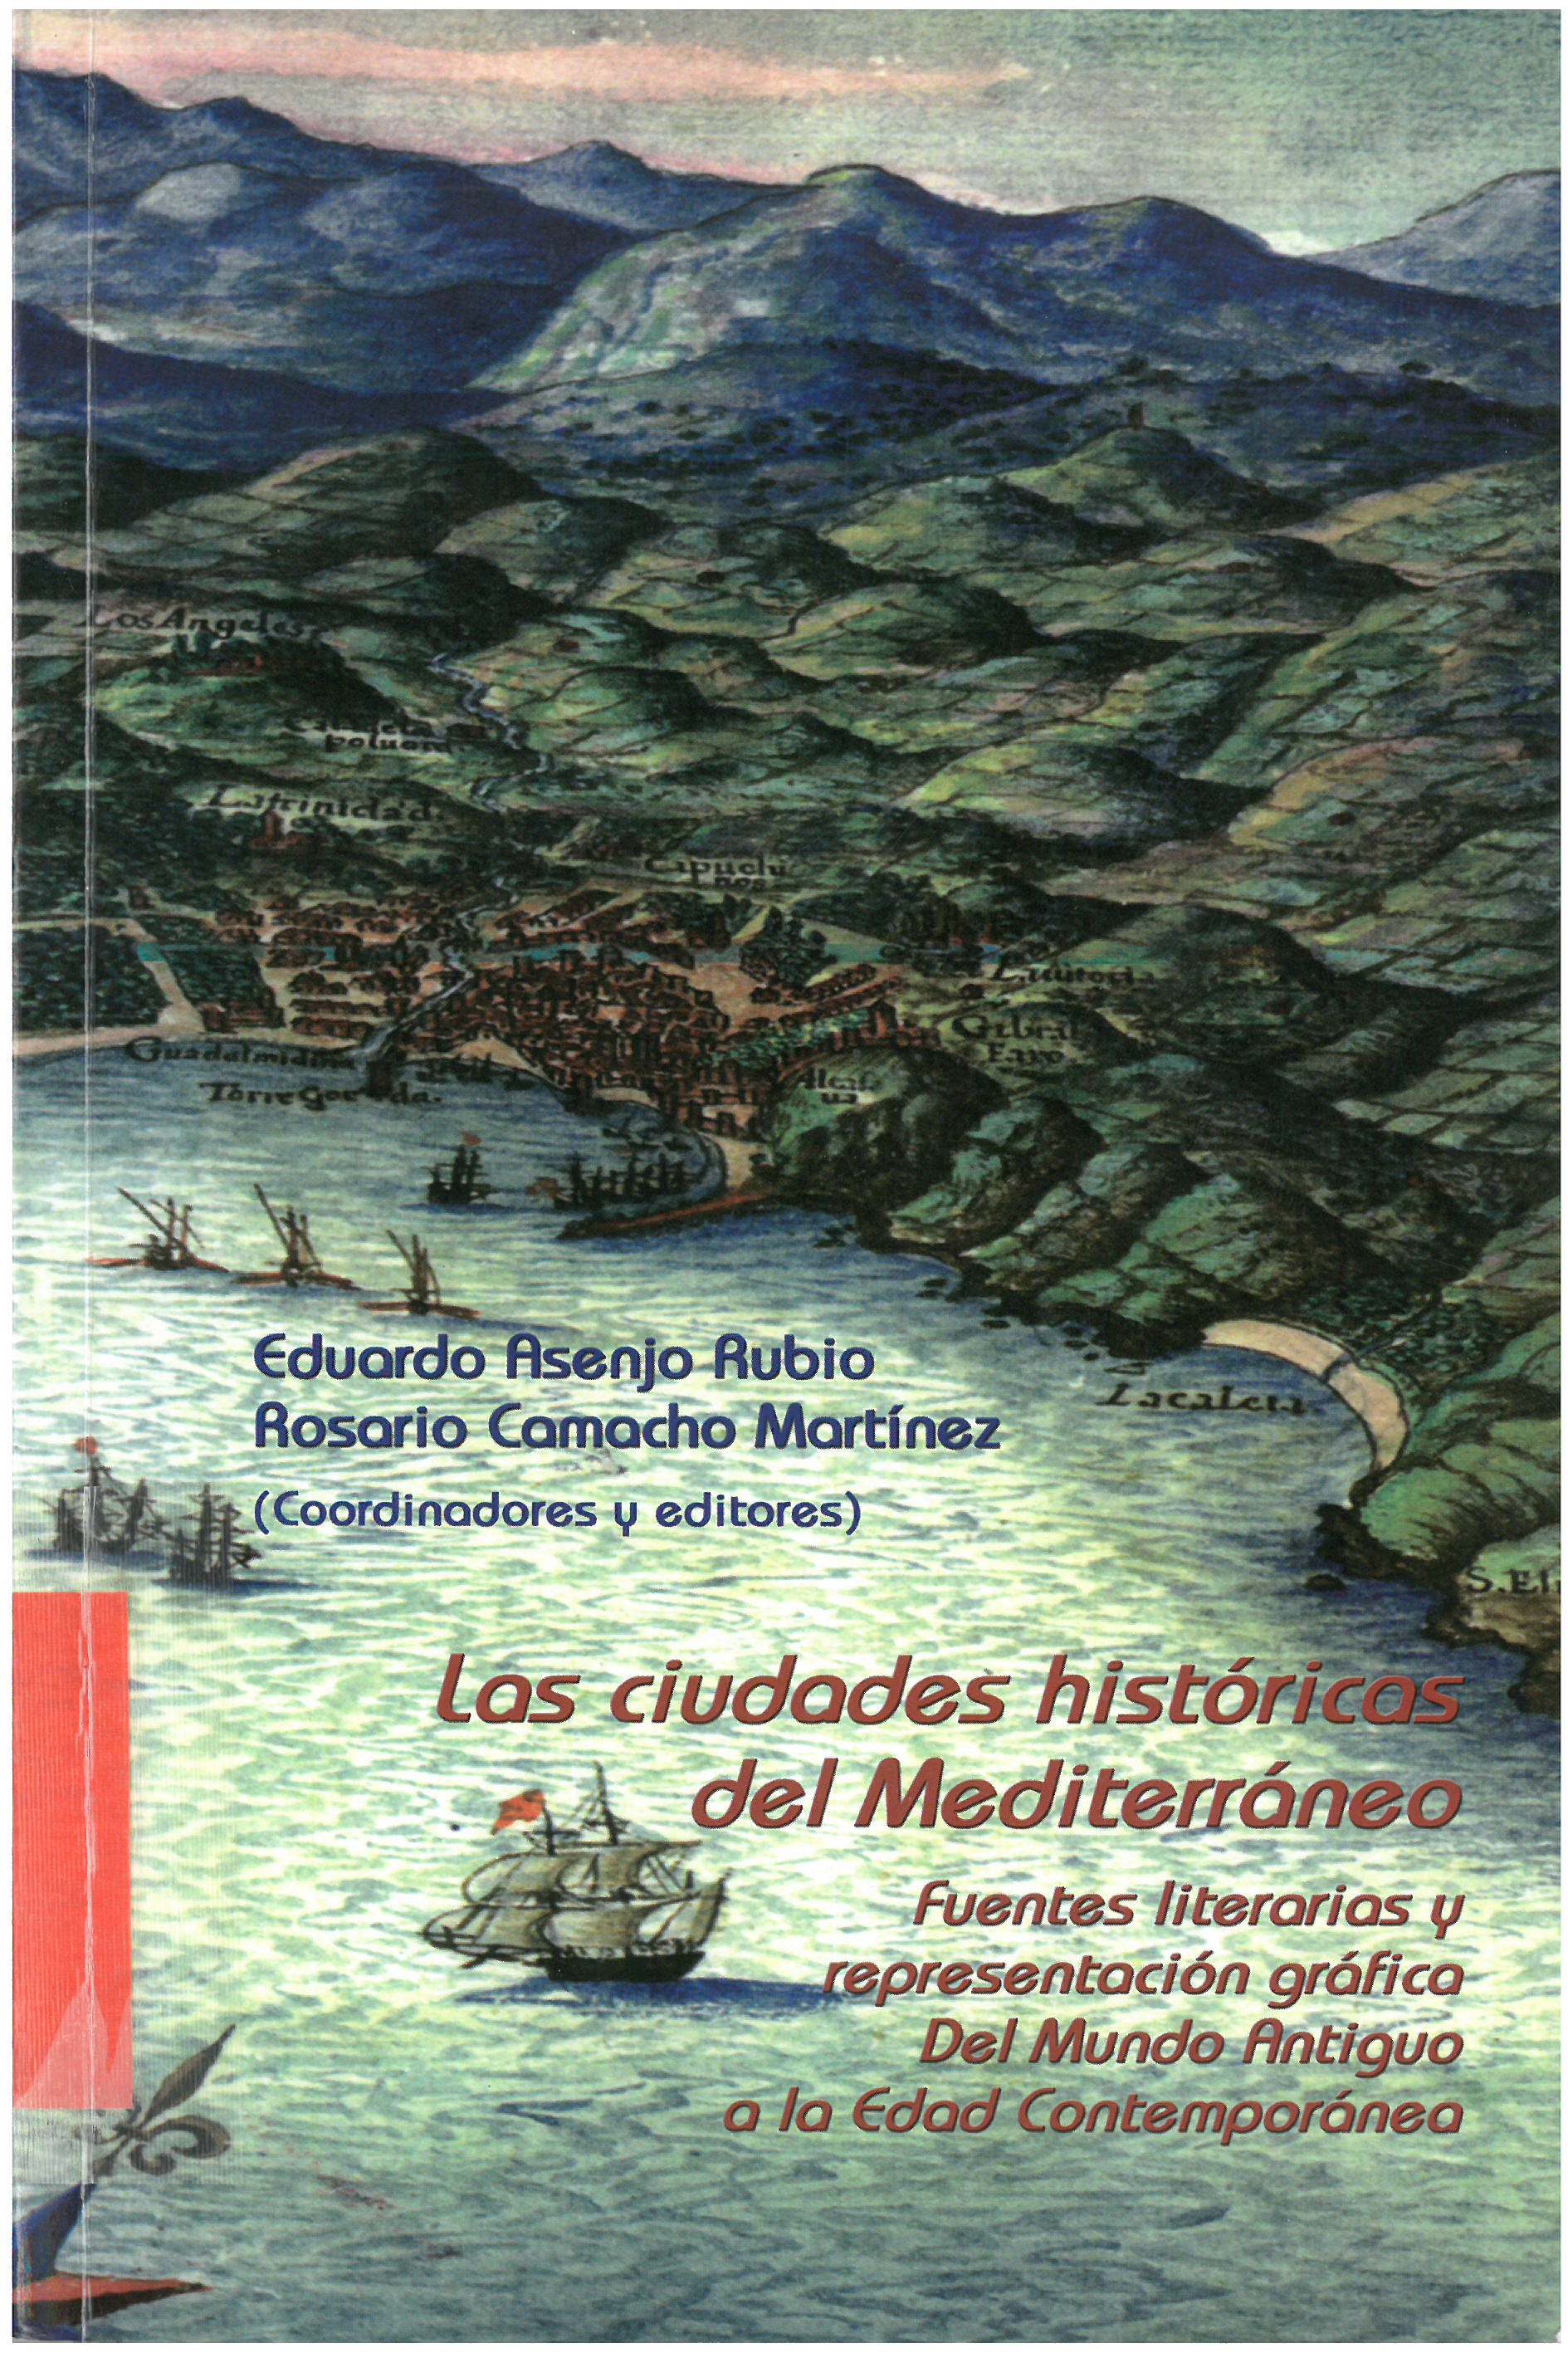 Imagen de portada del libro Las ciudades históricas del Mediterráneo